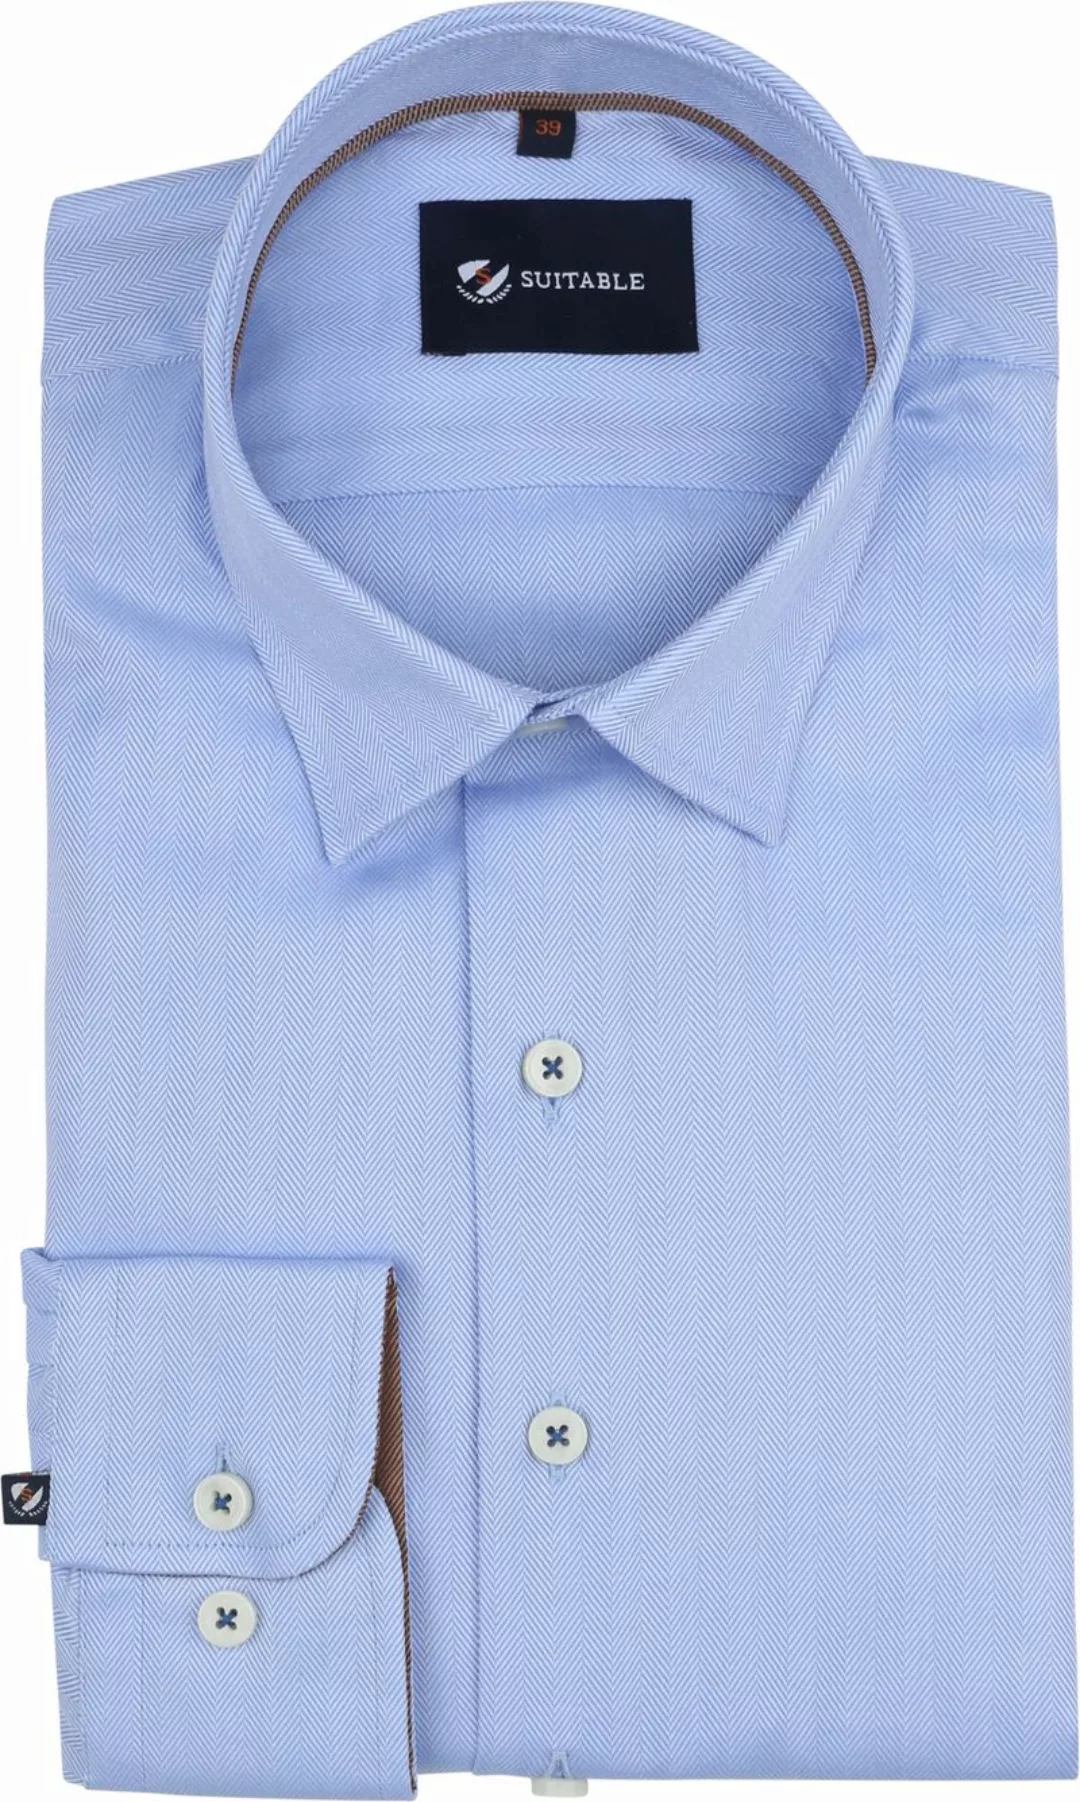 Suitable Hemd Herringbone Hellblau - Größe 39 günstig online kaufen